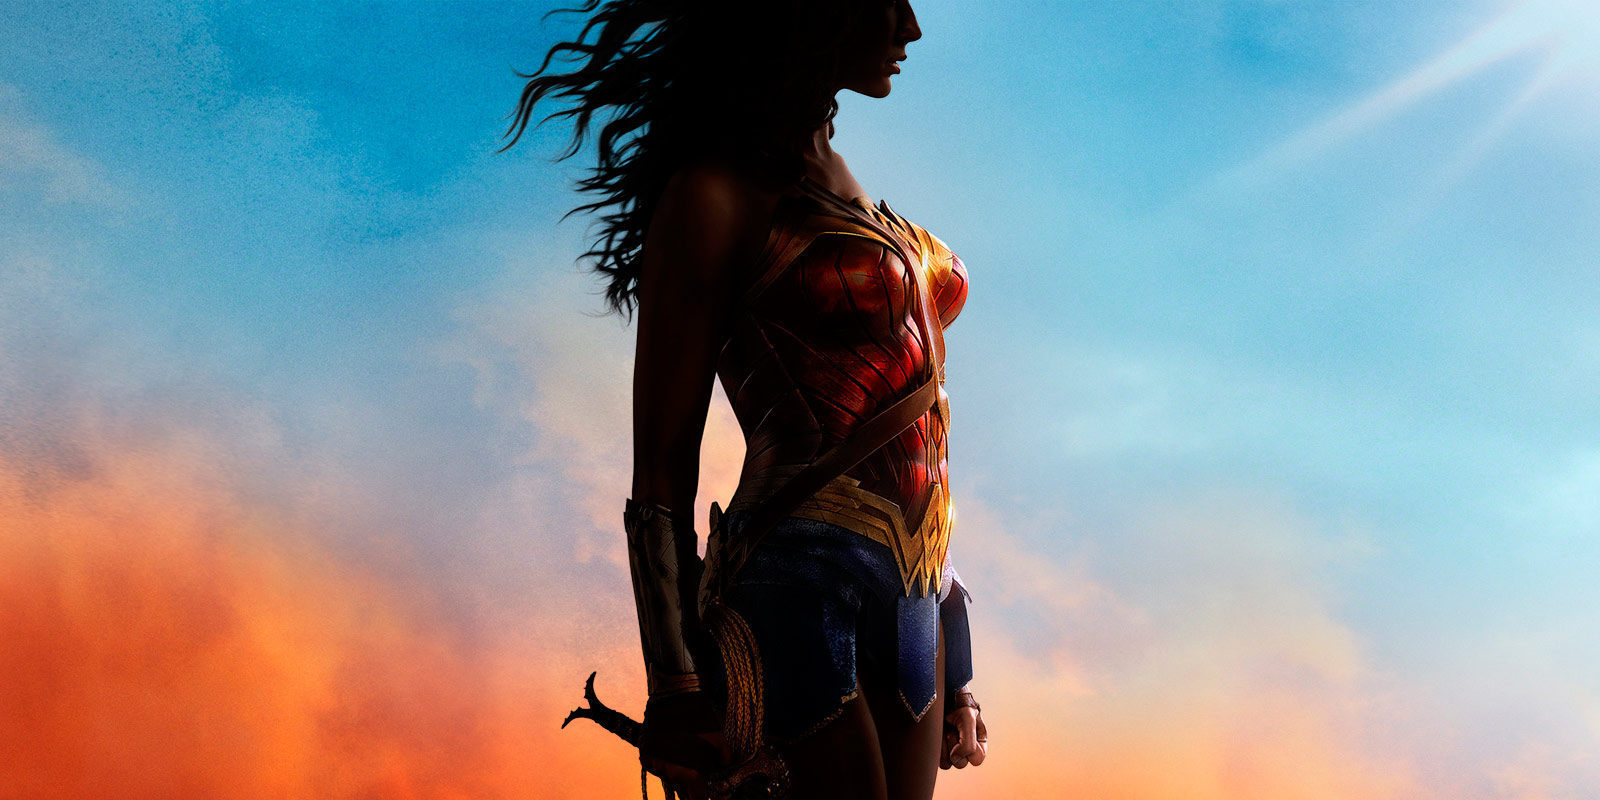 Nuevo tráiler internacional de 'Wonder Woman' con más Diana Prince